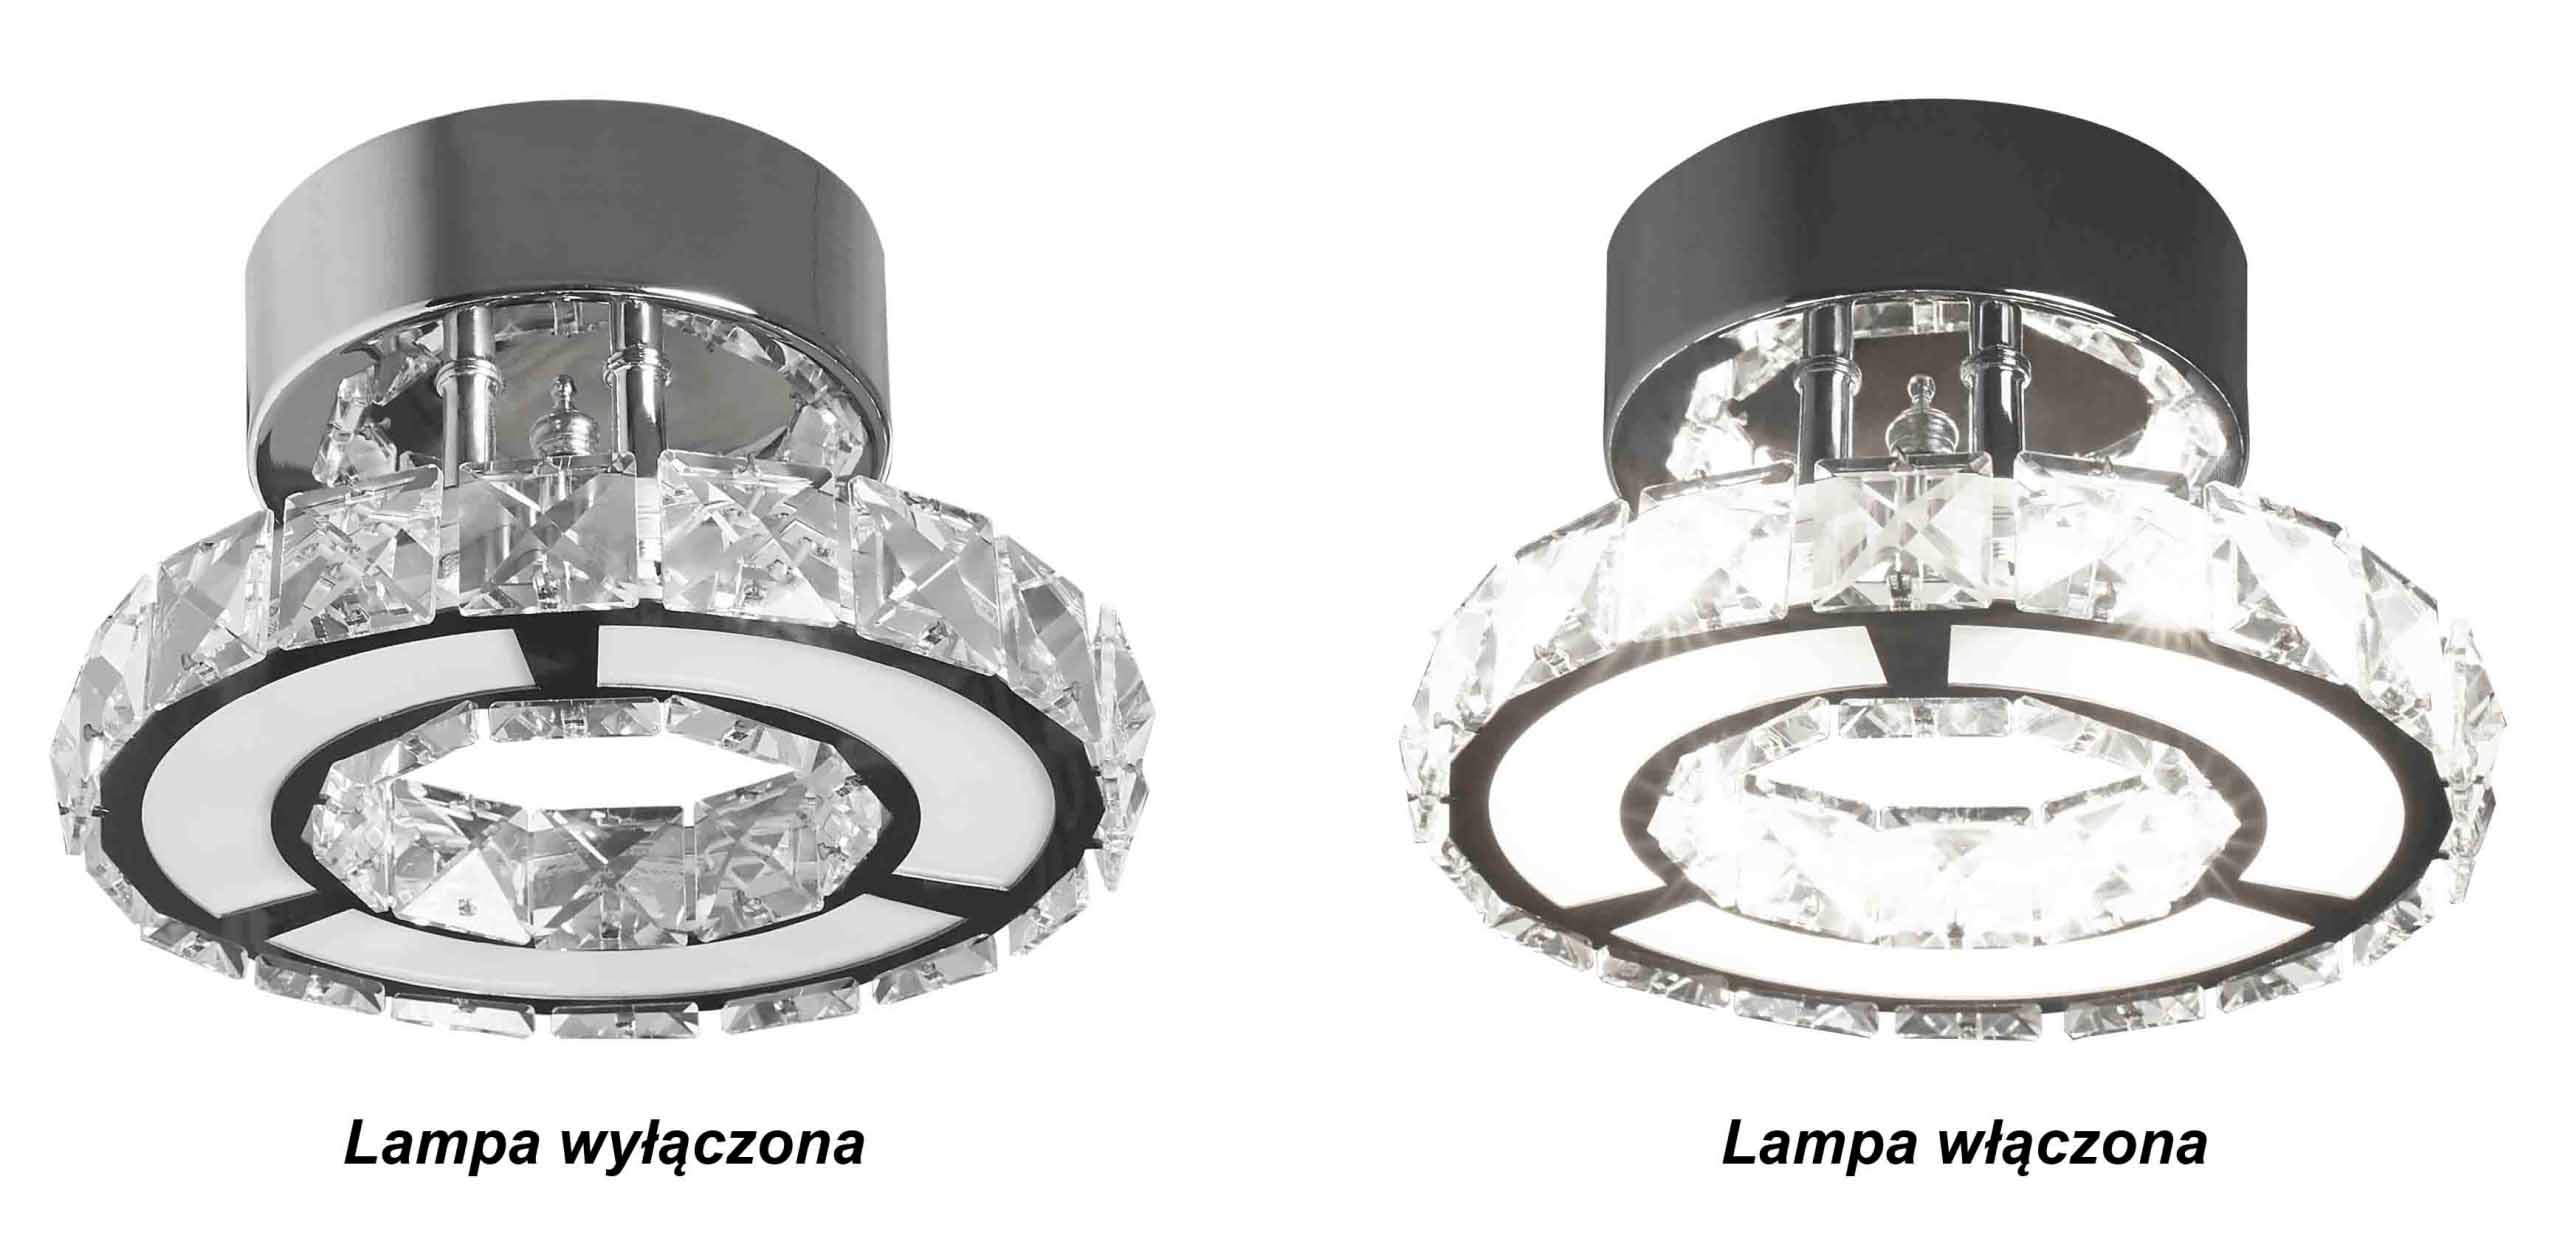 Lampa kinkiet Otylia - czarujace i eleganckie refleksy świetlne dzięki szklanym kryształkom